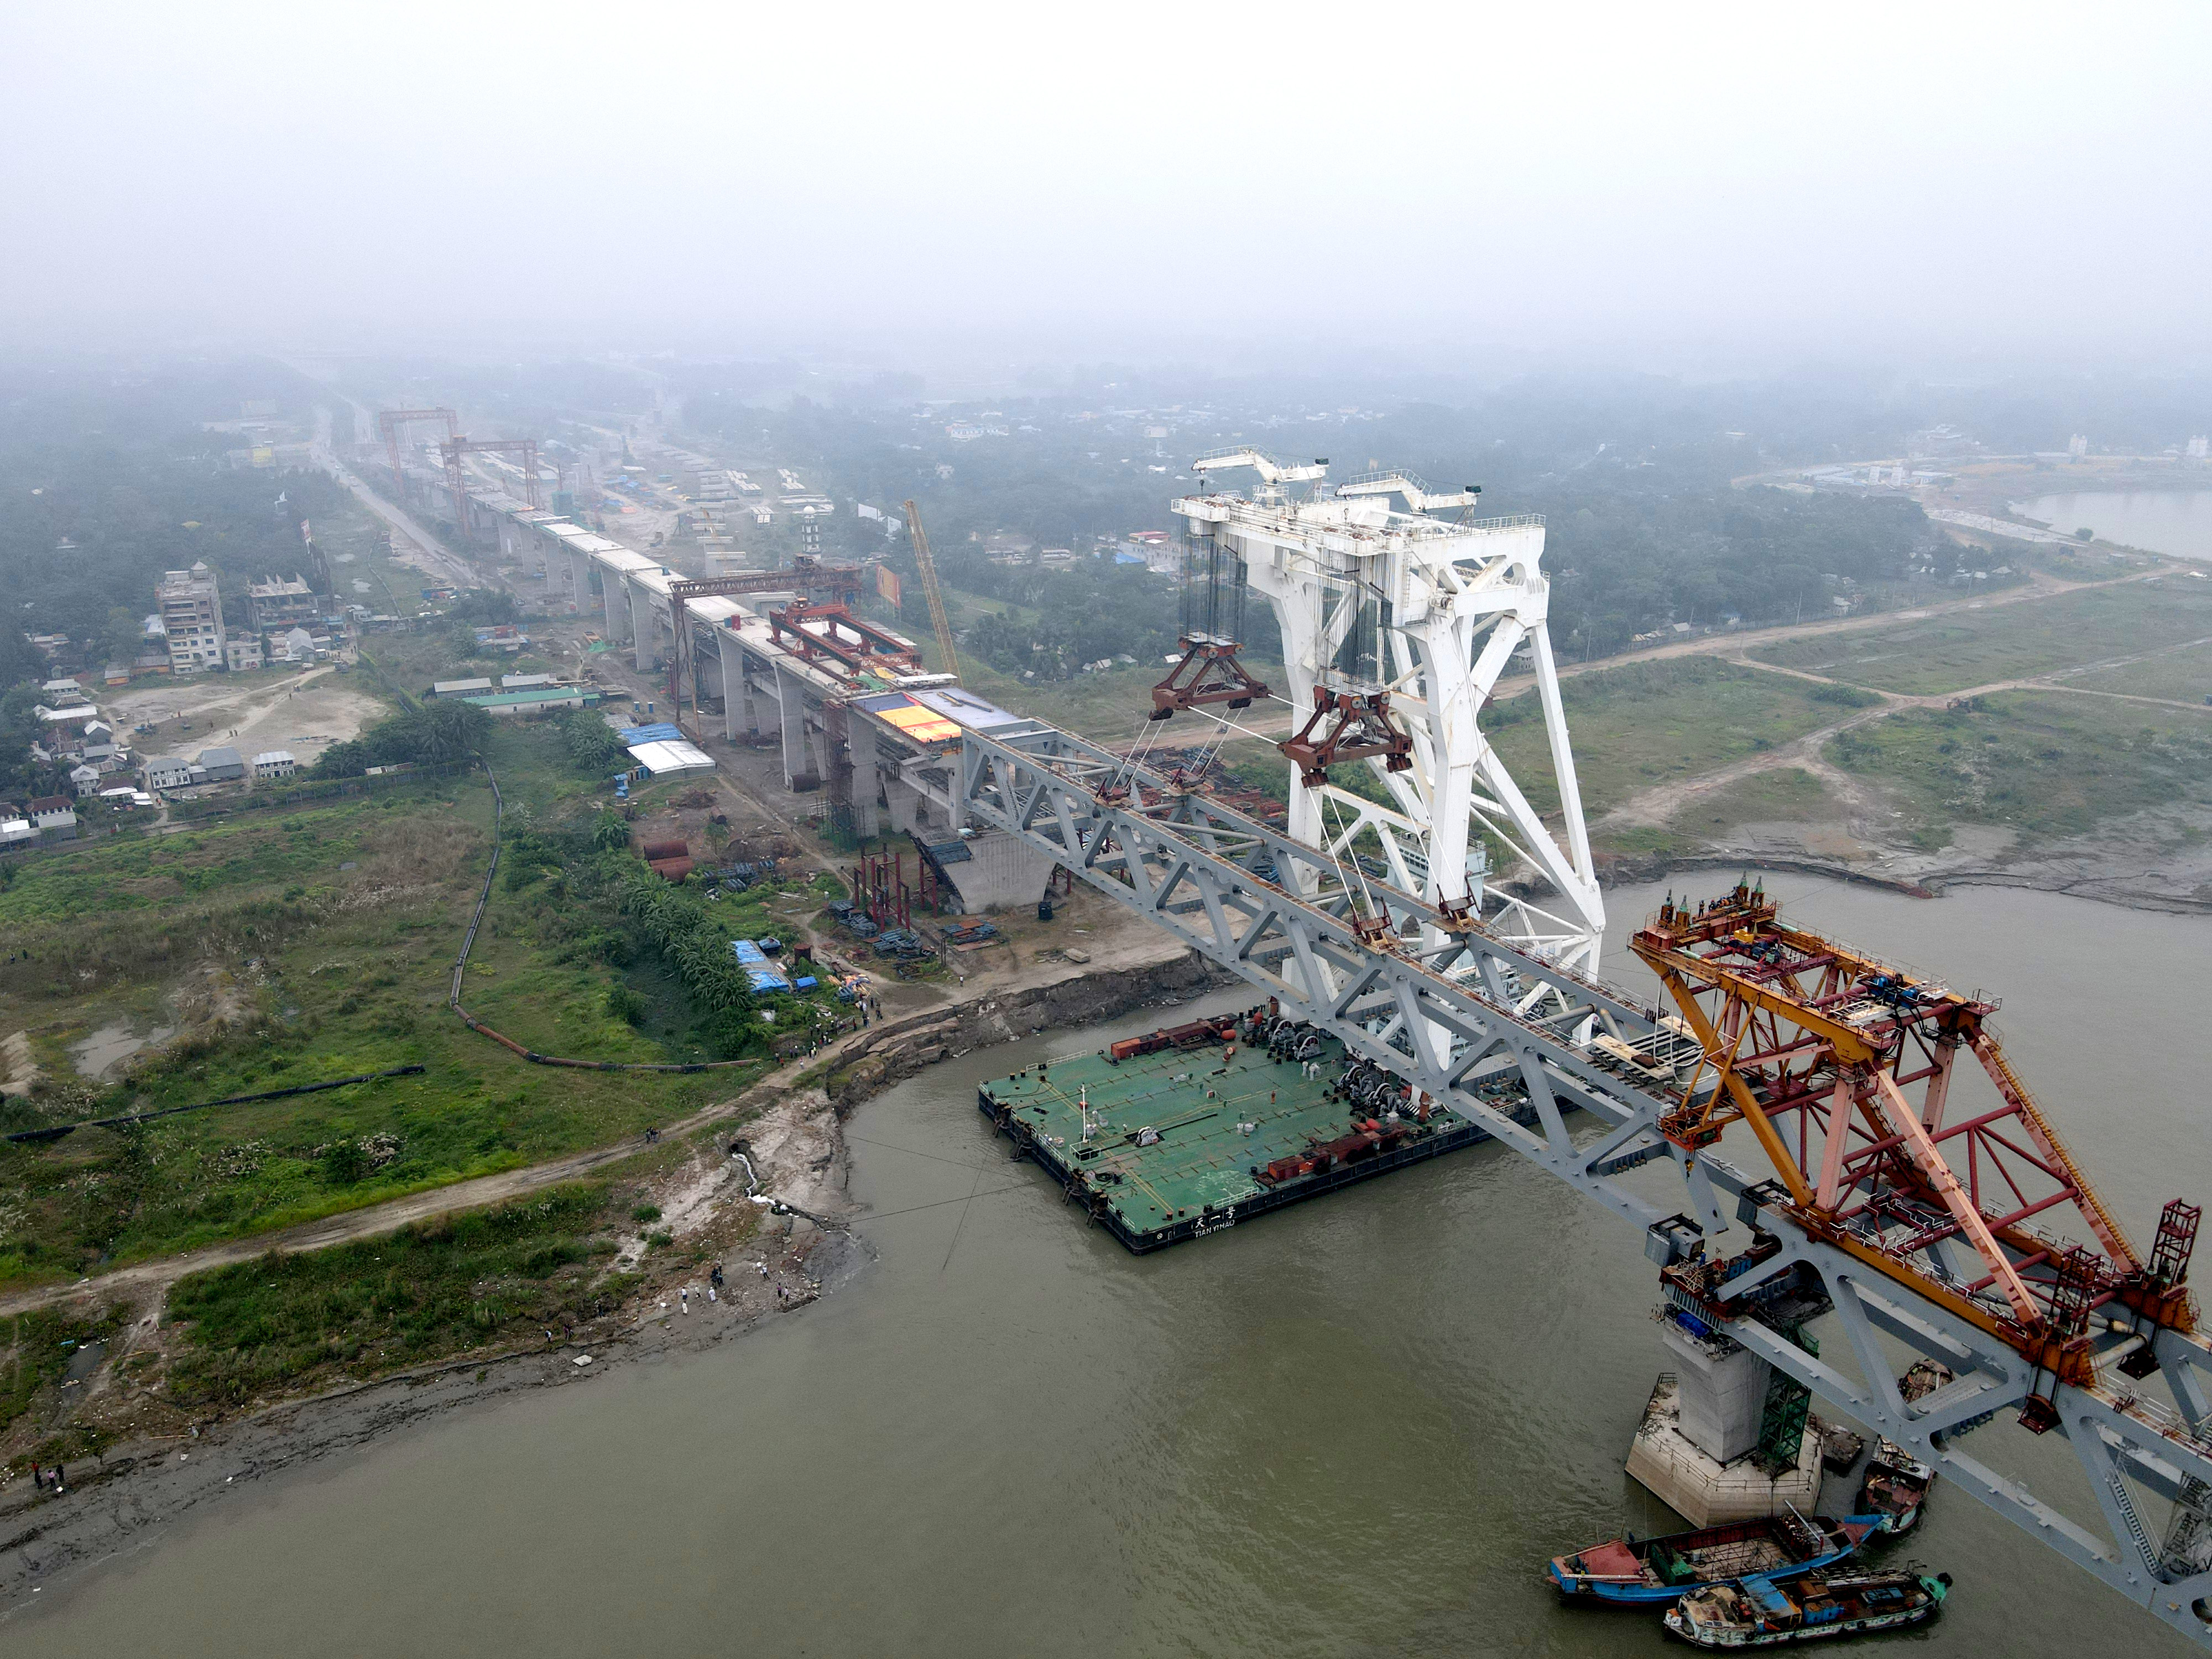 中国再创奇迹工程,帮助印度完成了帕德玛大桥的修建工程